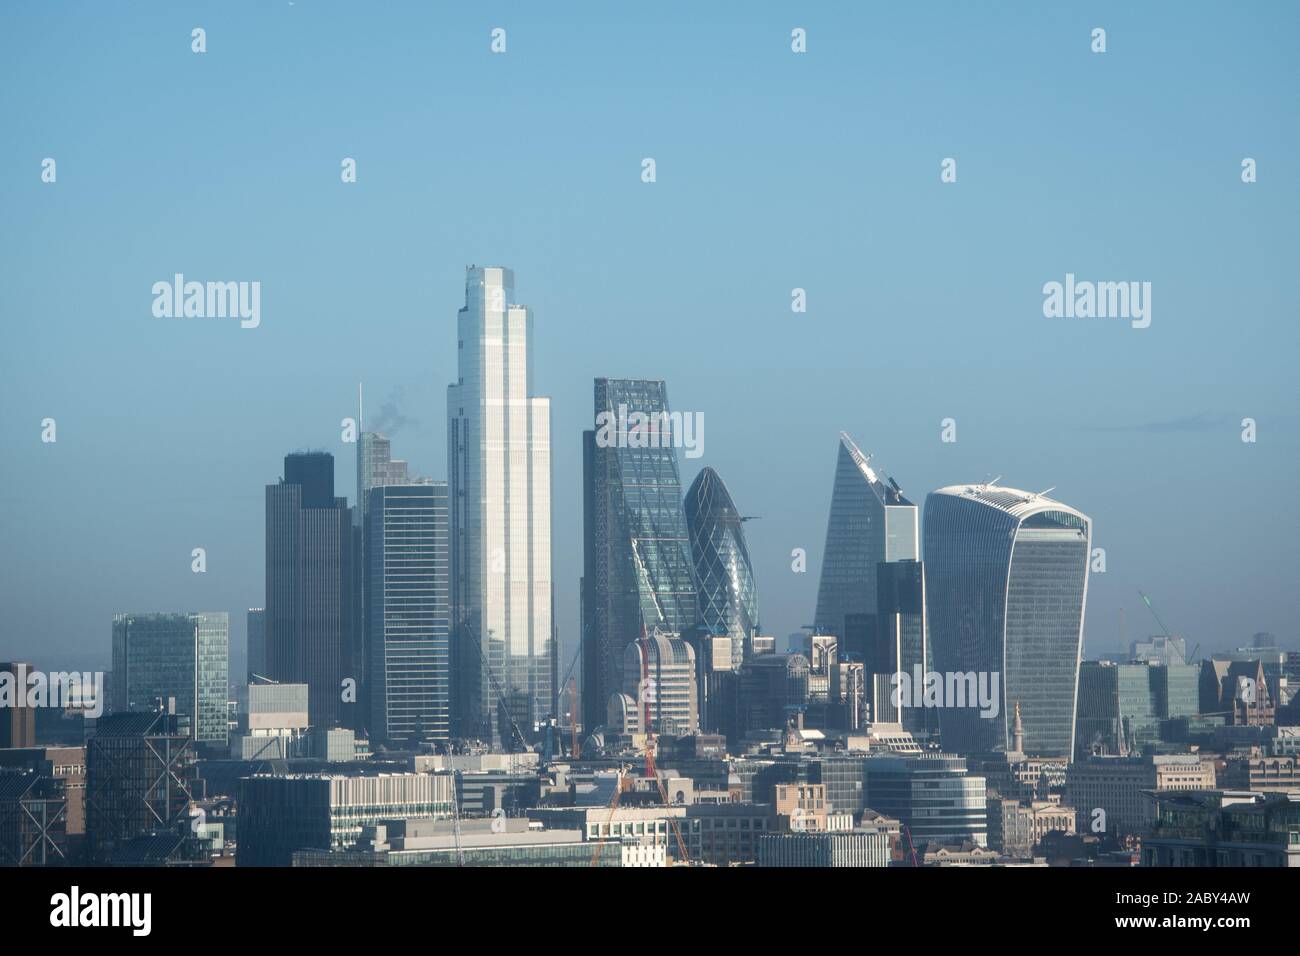 Vista generale della skyline di Londra, come si vede dal Millbank Tower: mostra da destra a sinistra il walkie talkie (20 Fenchurch Street) (destra), il bisturi (52 Lime Street), il Gherkin (30 St Mary Axe), il Cheesegrater (l'edificio Leadenhall), ventidue torre (22 Bishopsgate) e 100 Bishopsgate del distretto finanziario. Foto Stock